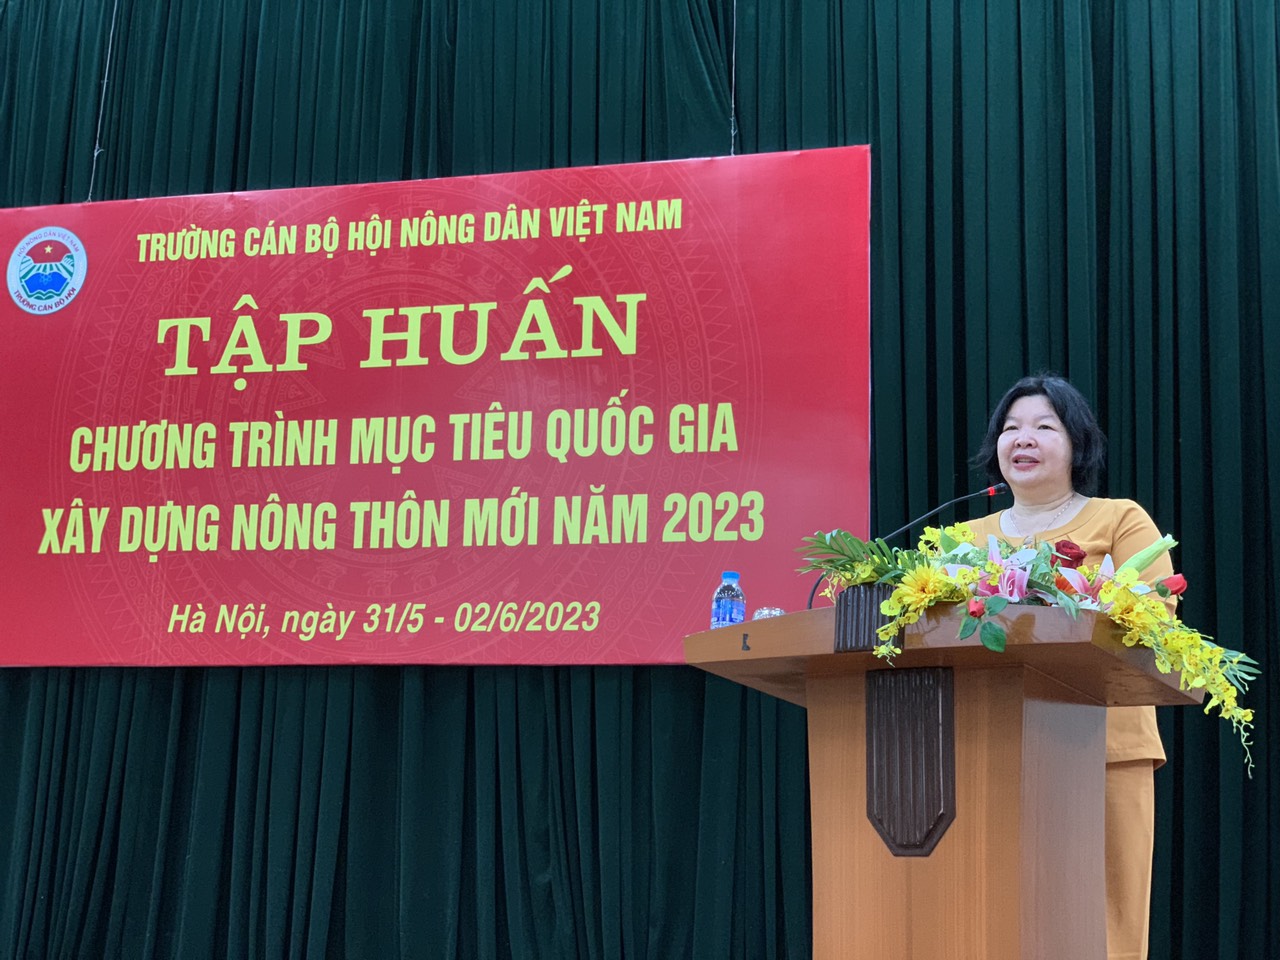 Trường Cán bộ Hội Nông dân Việt Nam khai giảng lớp tập huấn về Chương trình mục tiêu Quốc gia xây dựng nông thôn mới - Ảnh 1.